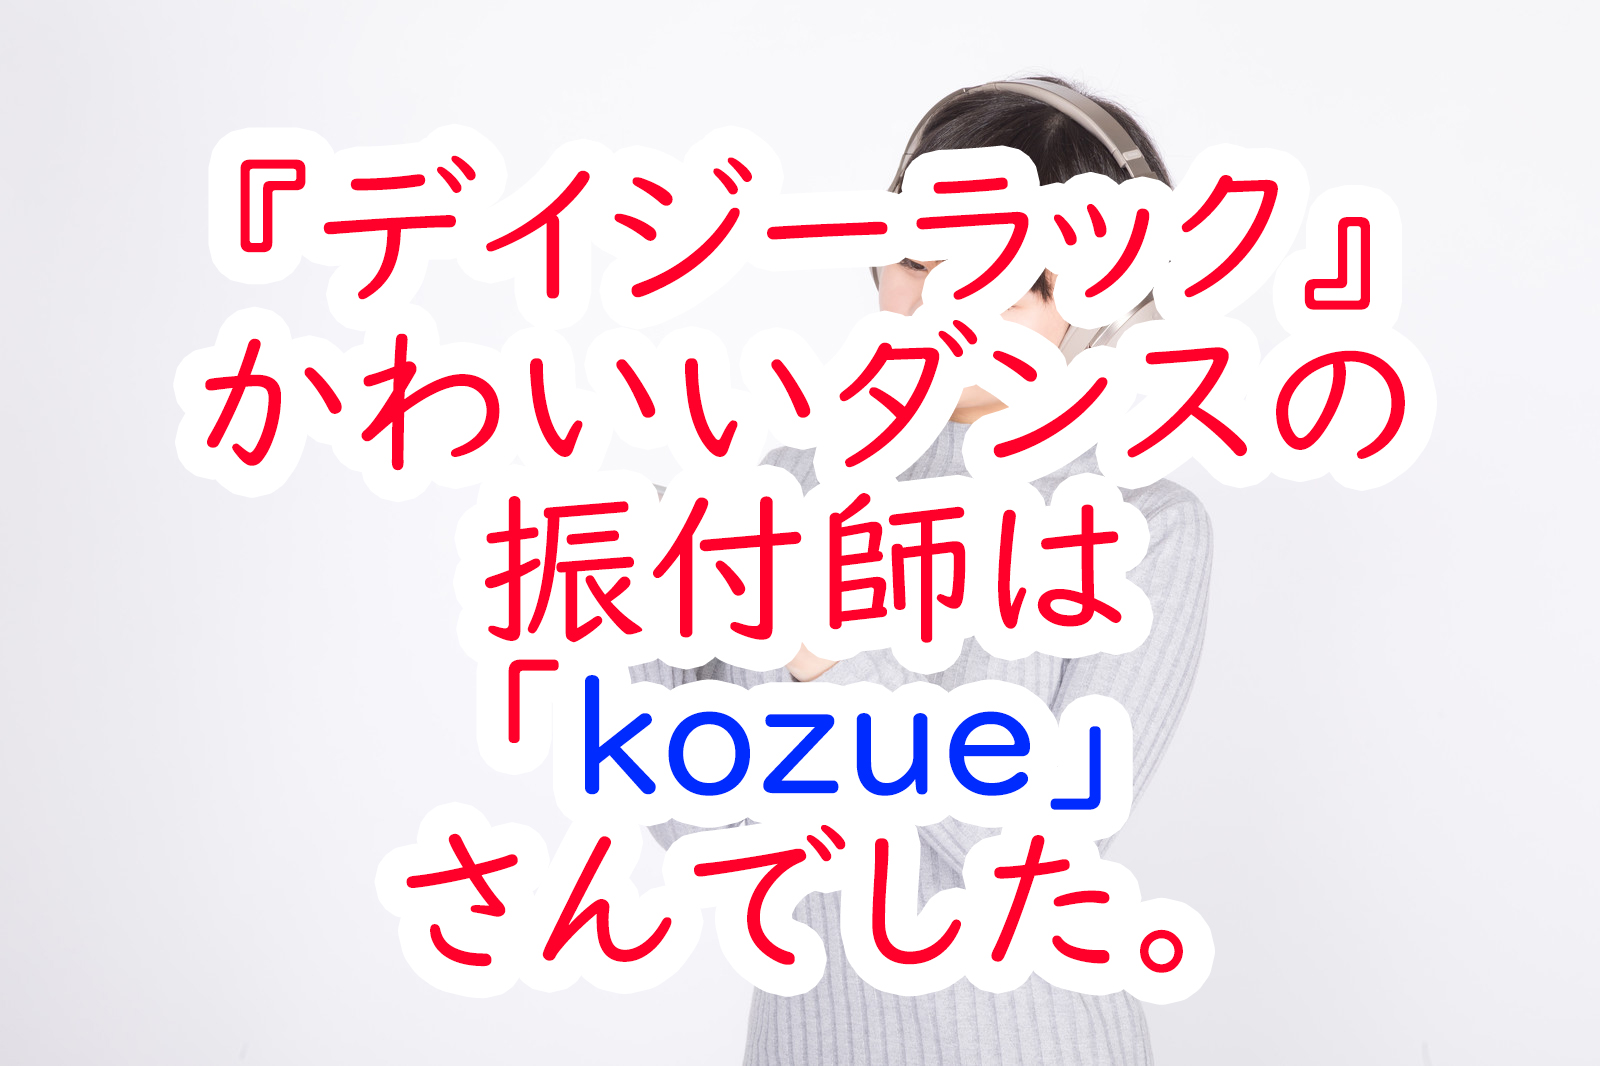 デイジーラック かわいいダンスの振付師は Kozue さんでした うさぎのカクカク情報局